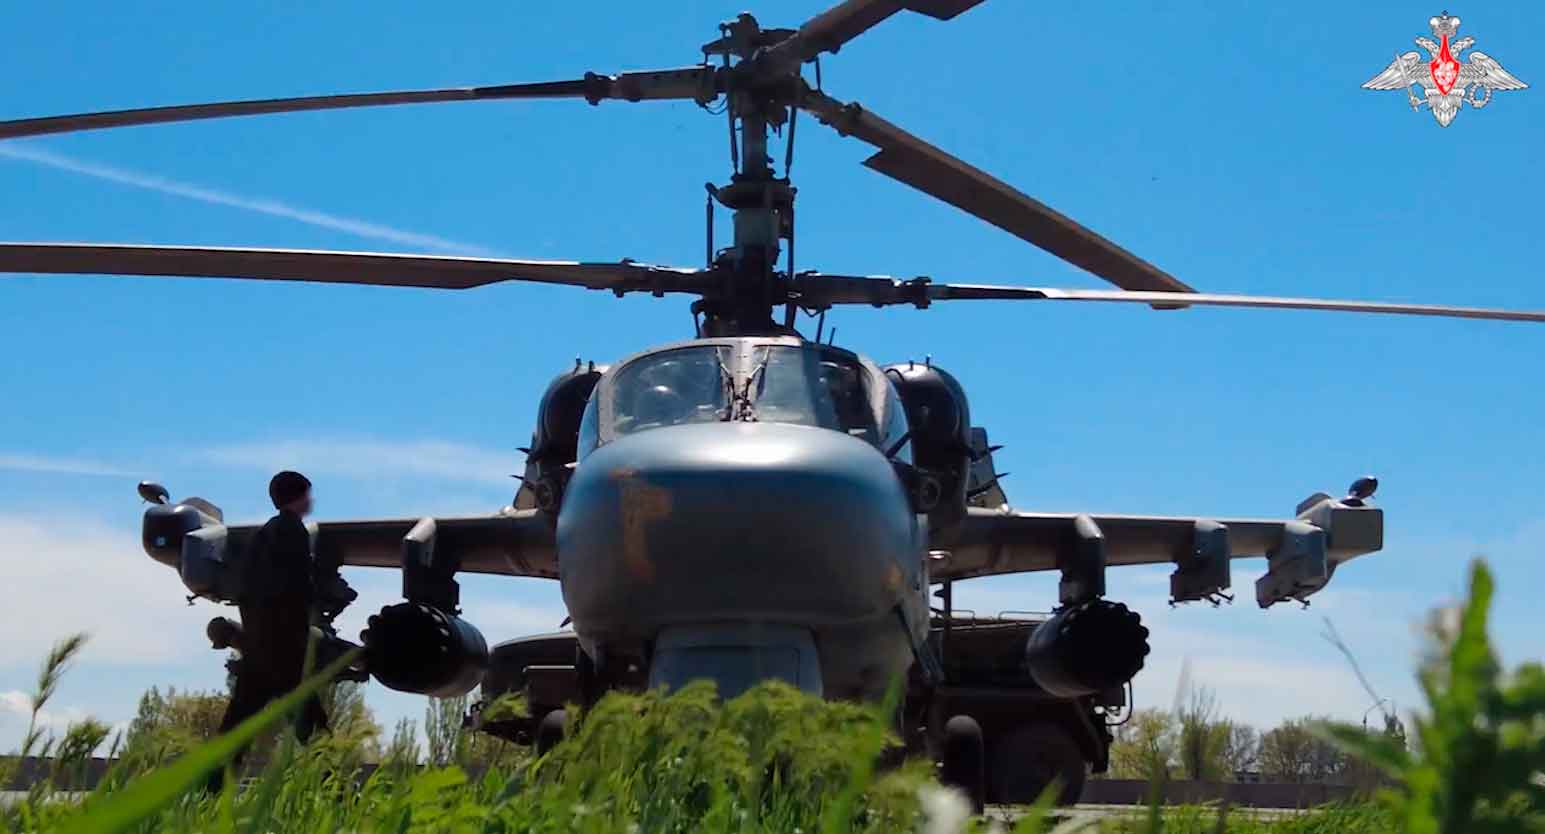 Em mais um vídeo publicado pelo Ministério de Defesa da Rússia nas redes sociais, mostra o poderoso Ka-52 se preparando e atacando posições inimigas na Invsão Russa da Ucrânia